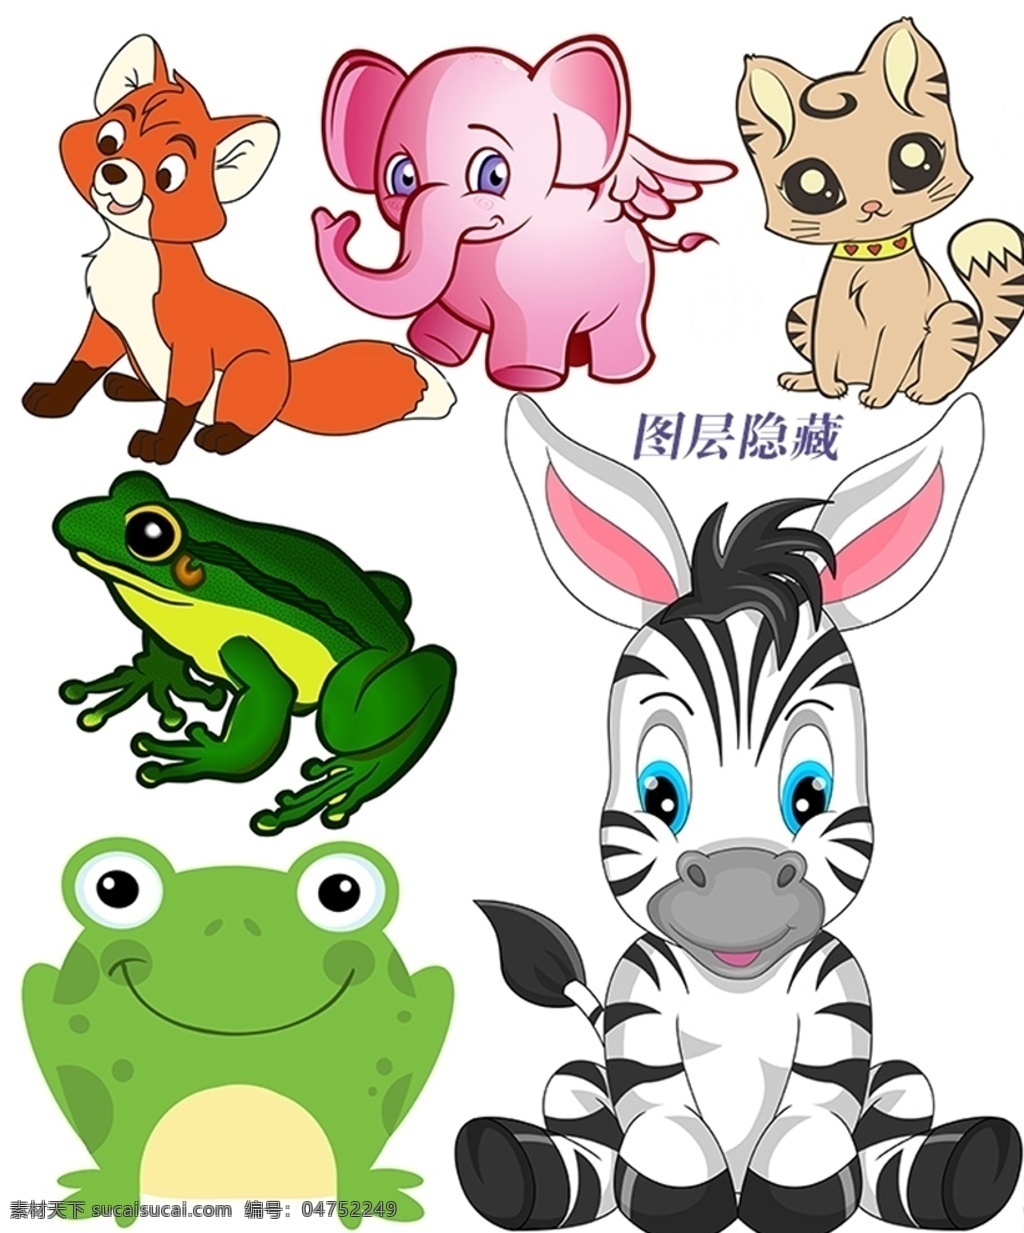 卡通动物 卡通 动物 矢量 2d 可爱 狐狸 小飞象 小猫 青蛙 斑马 2d动漫卡通 分层